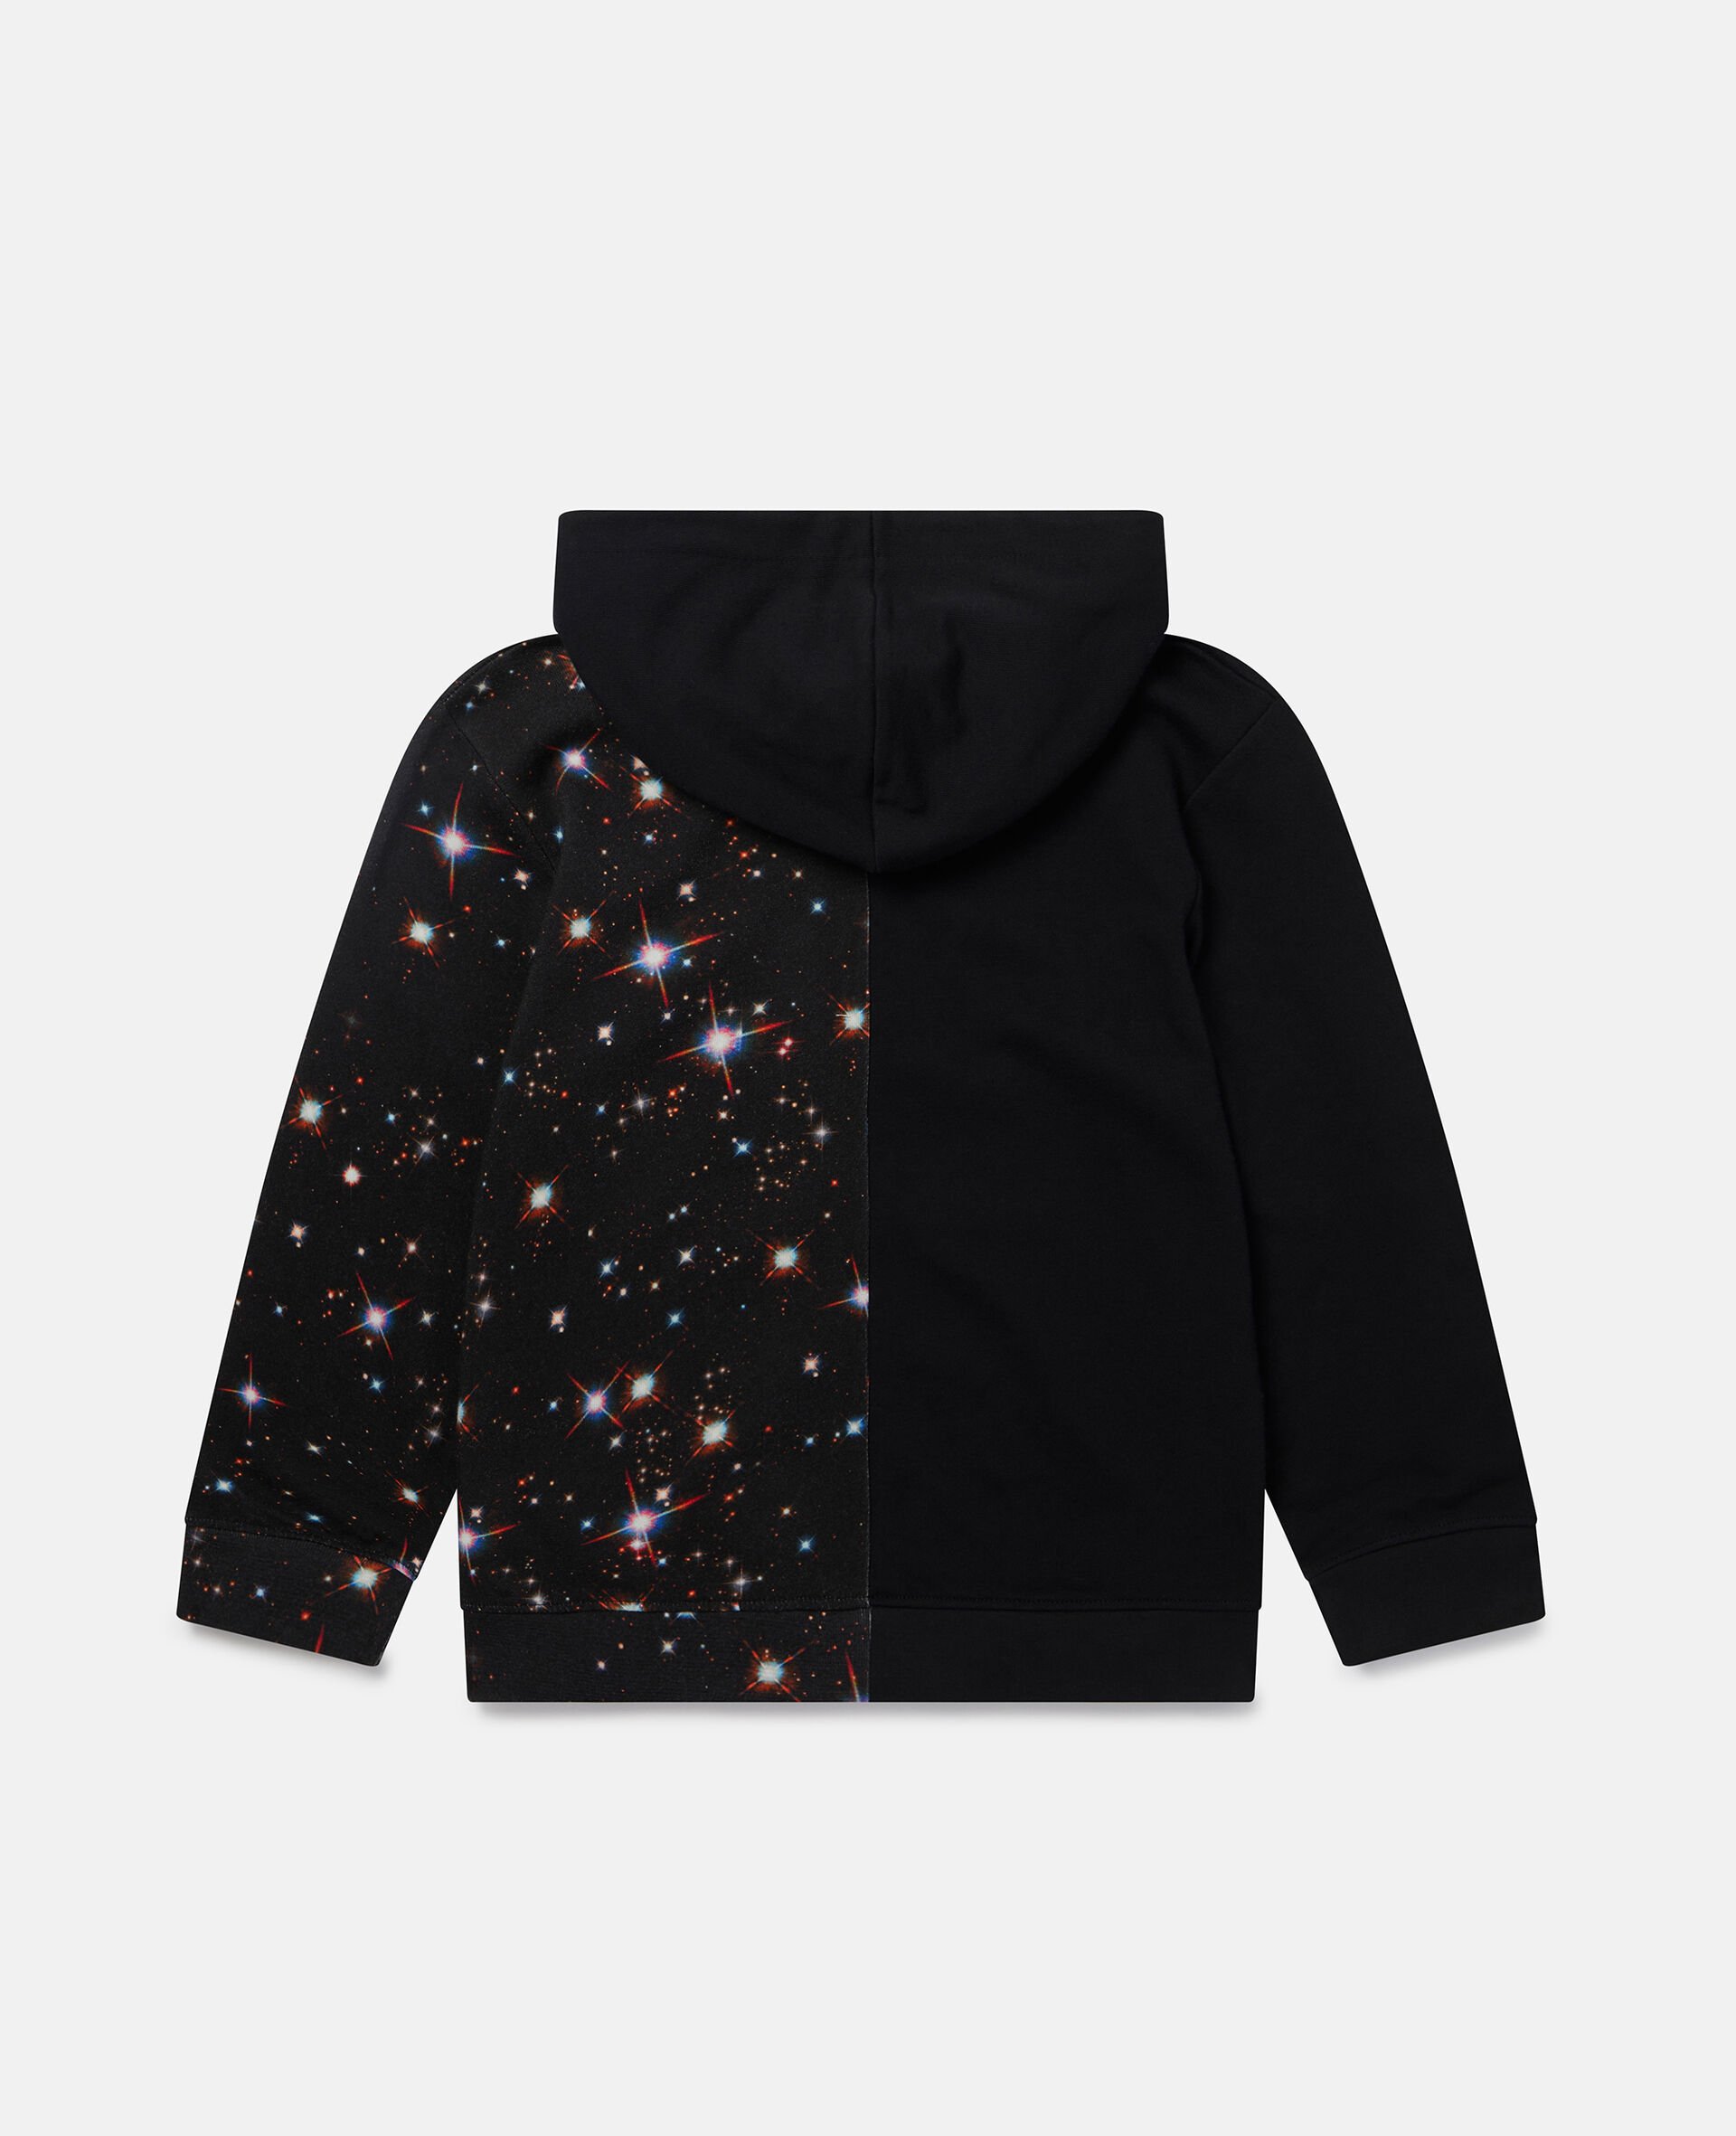 Cosmic Star Print Fleece Hoodie-Black-large image number 2